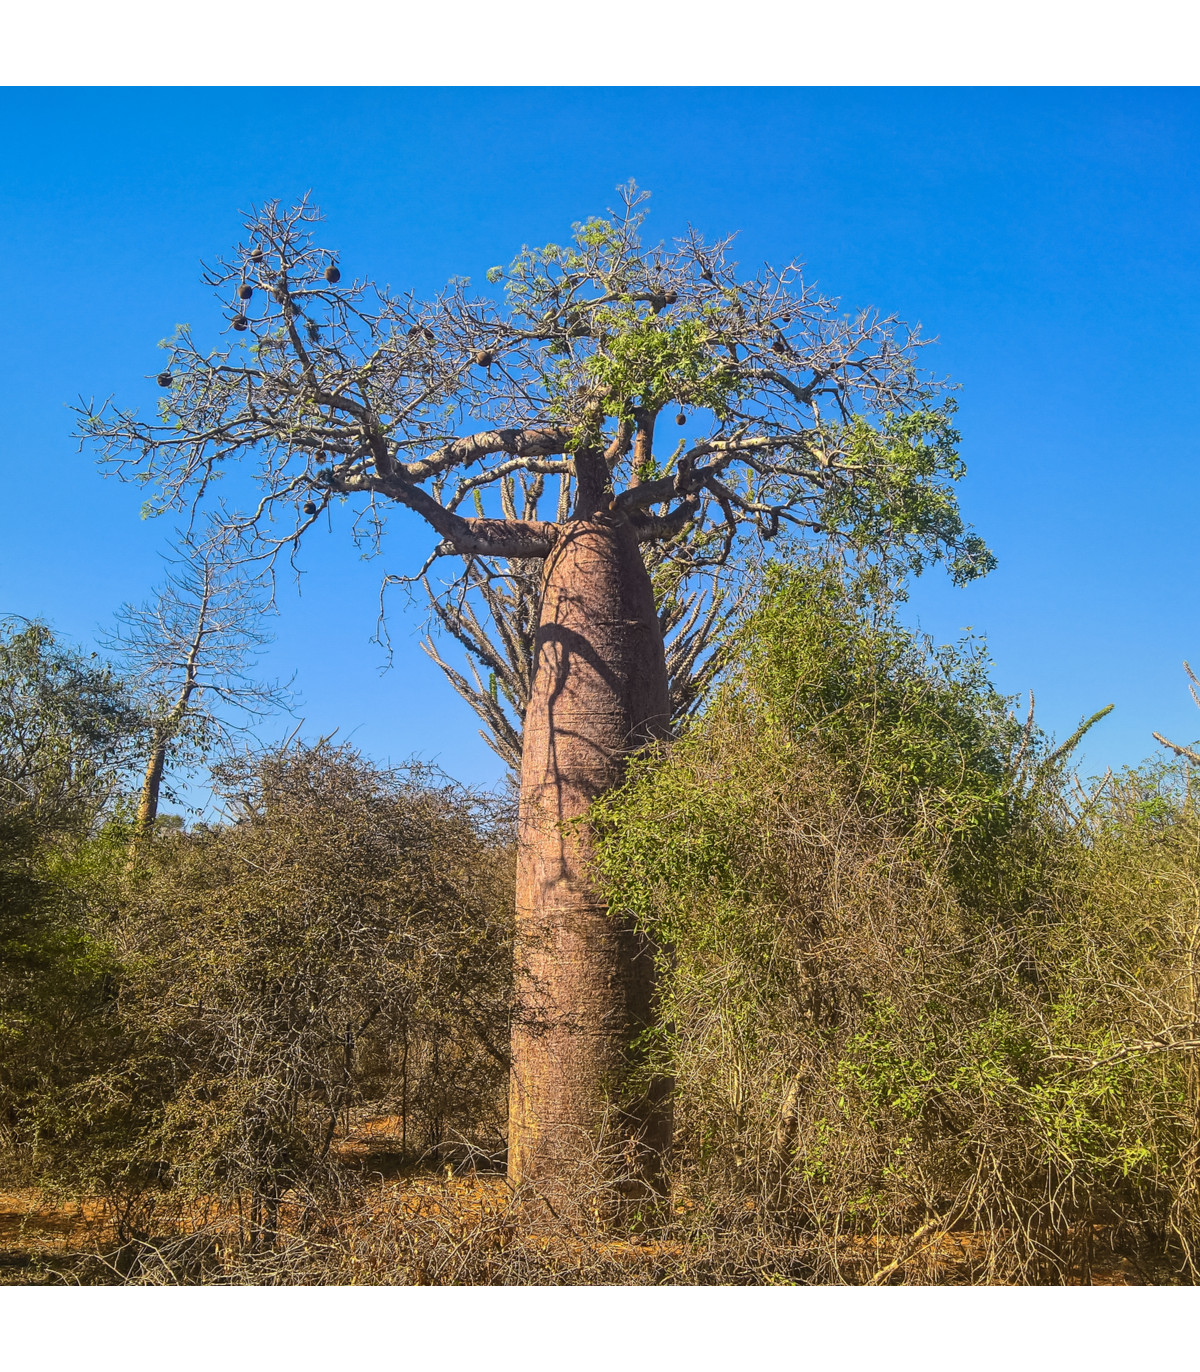 Baobab Fony - fľaškový strom - Adansonia fony - semená baobabu - semiačka - 2 ks